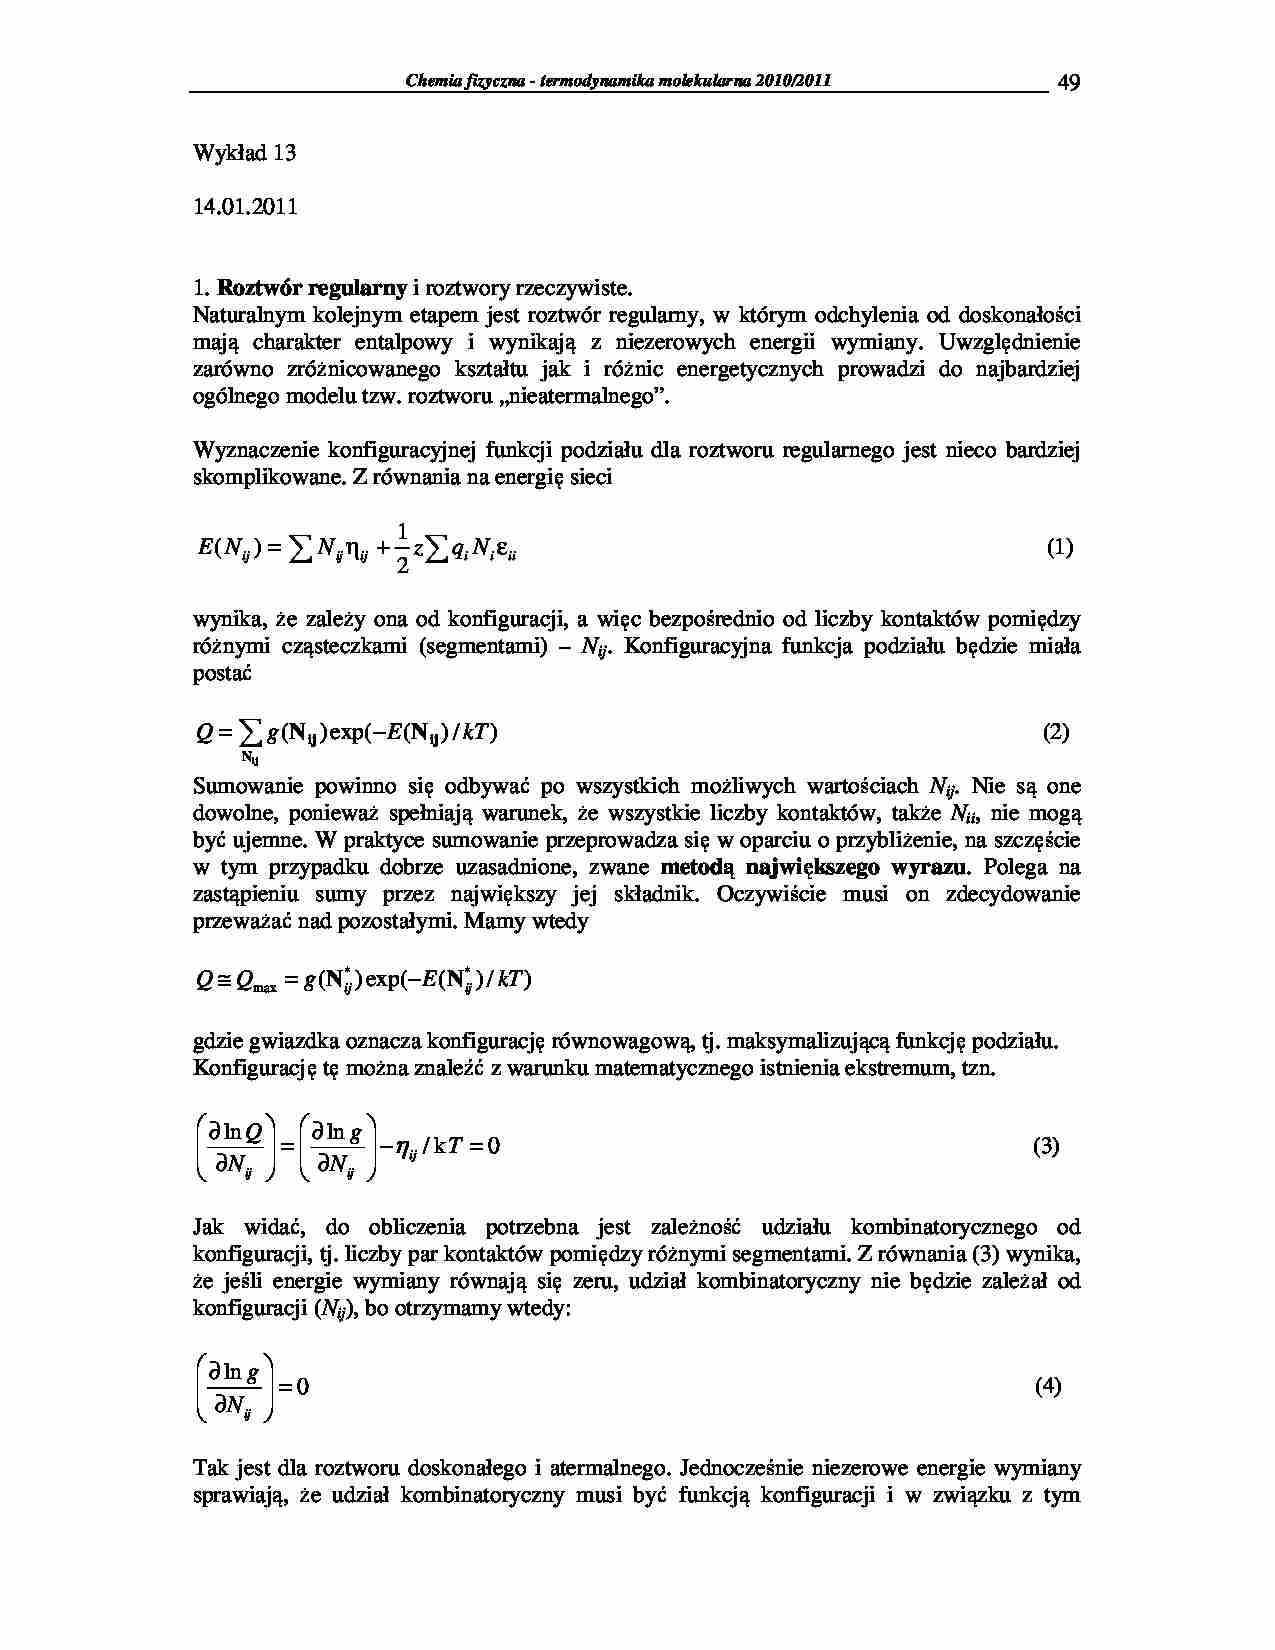 Chemia fizyczna - termodynamika molekularna 2009/2010-wykłady16 - strona 1